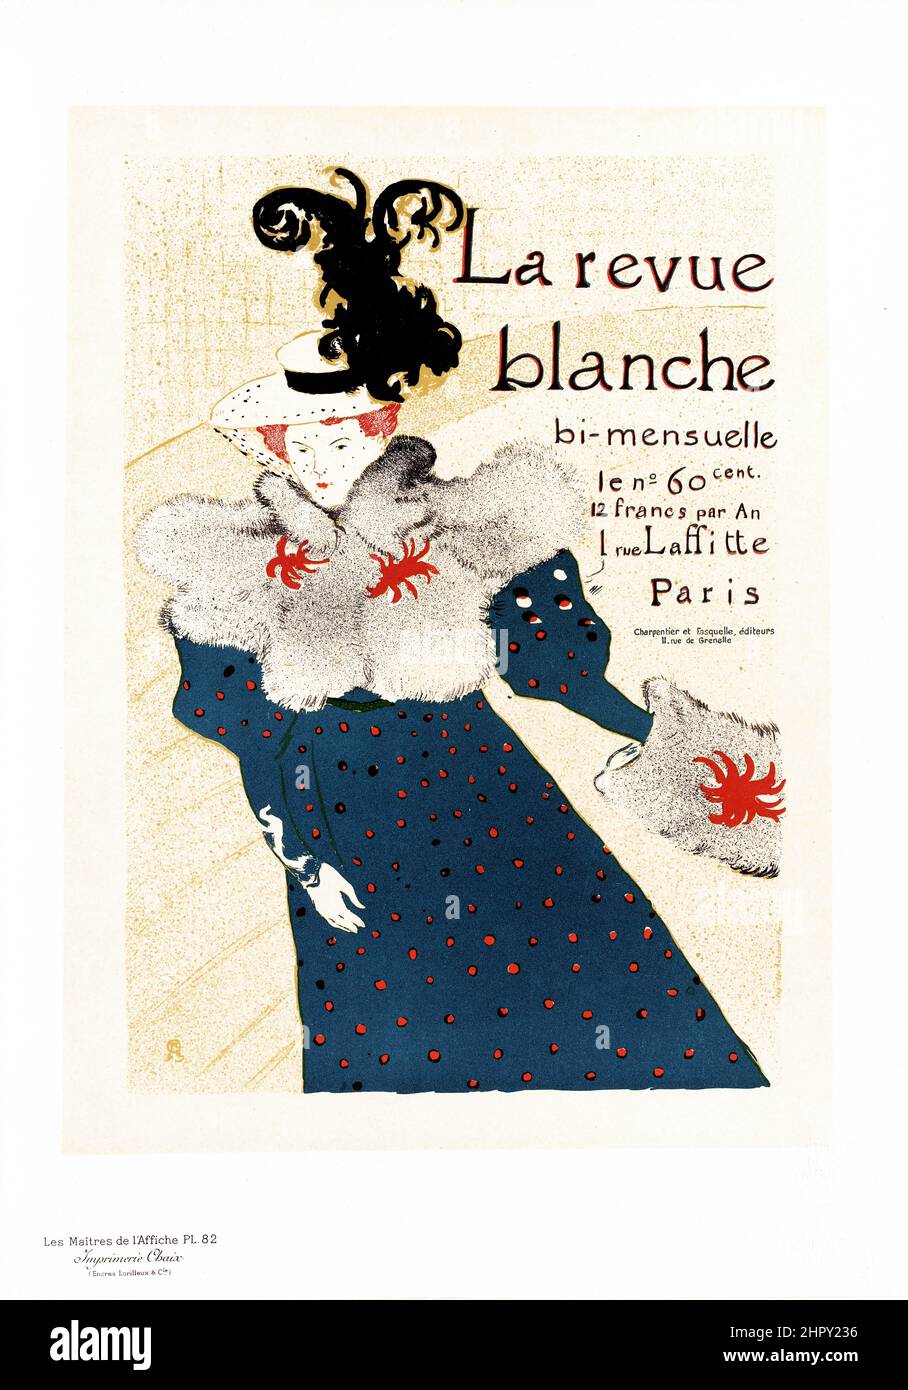 Maitres de l'affiche Band 2 - Platte 82 - Henri de Toulouse-Lautrec - La Revue Blanche 1895. Stockfoto